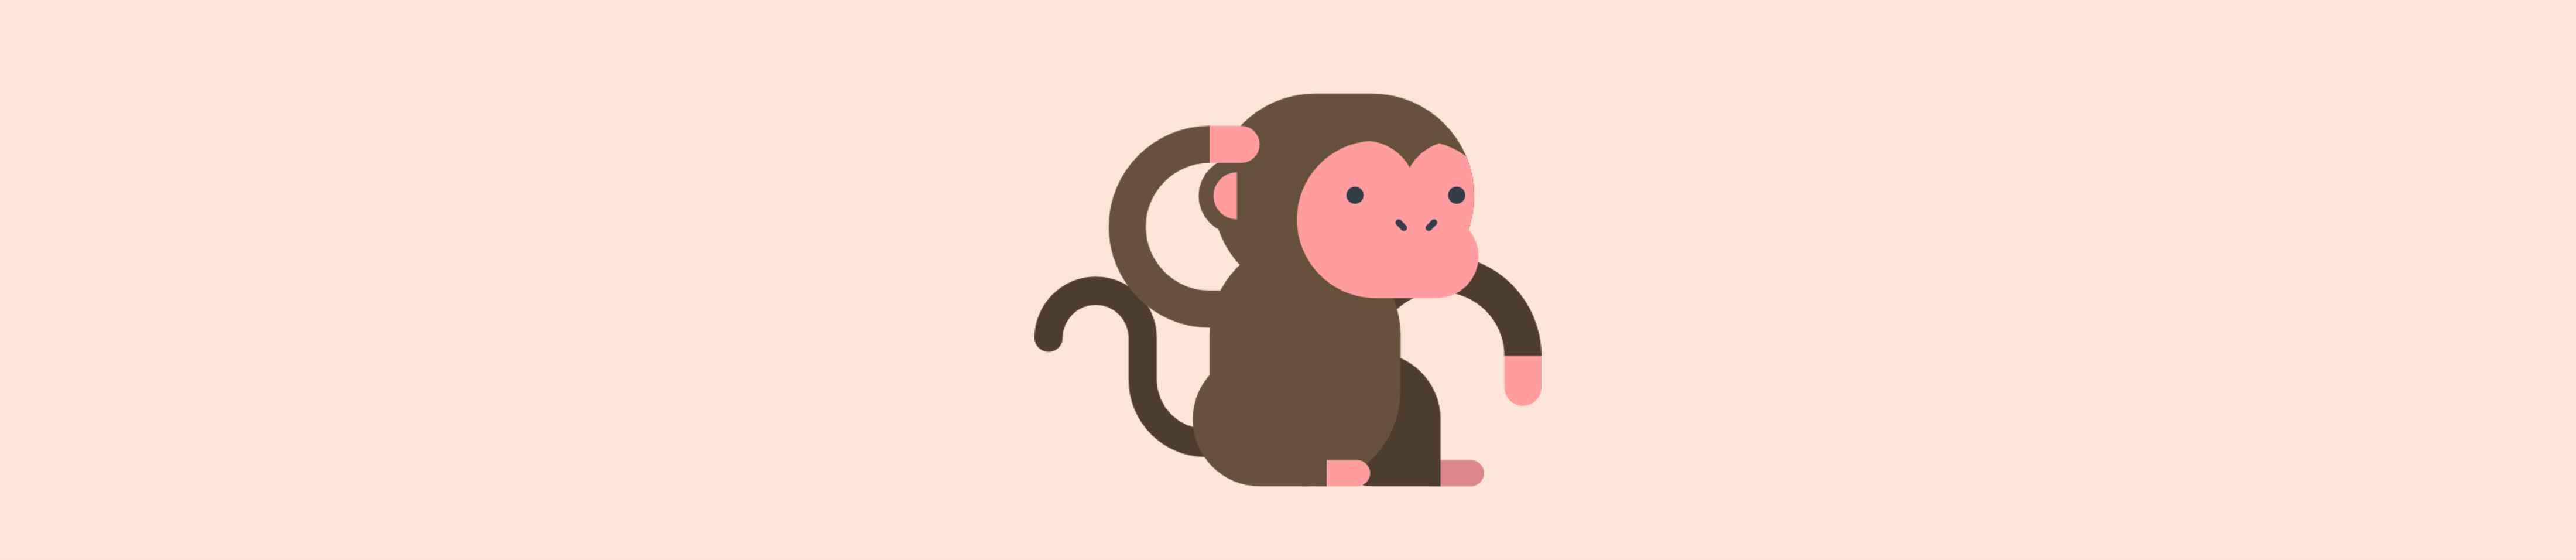 monkey mind capa